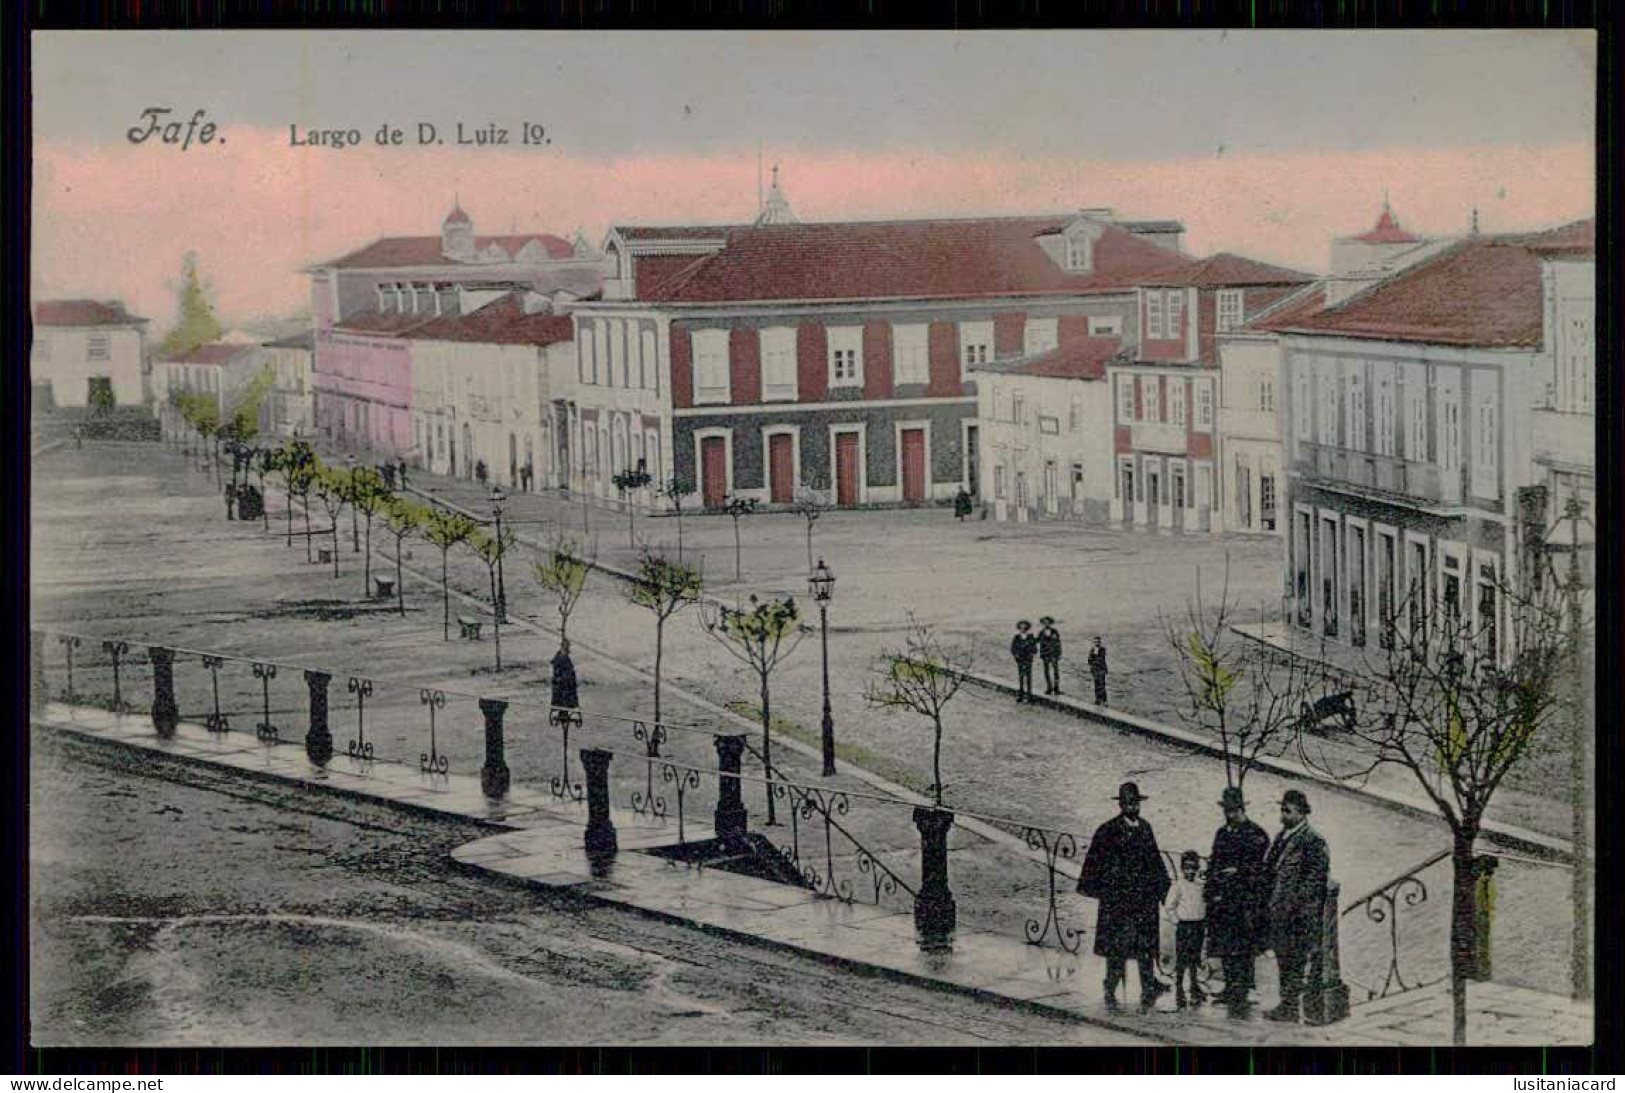 FAFE - Largo D. Luiz 1º ( Editor Luiz N. Mendes Nº 4 / 4844) Carte Postale - Braga